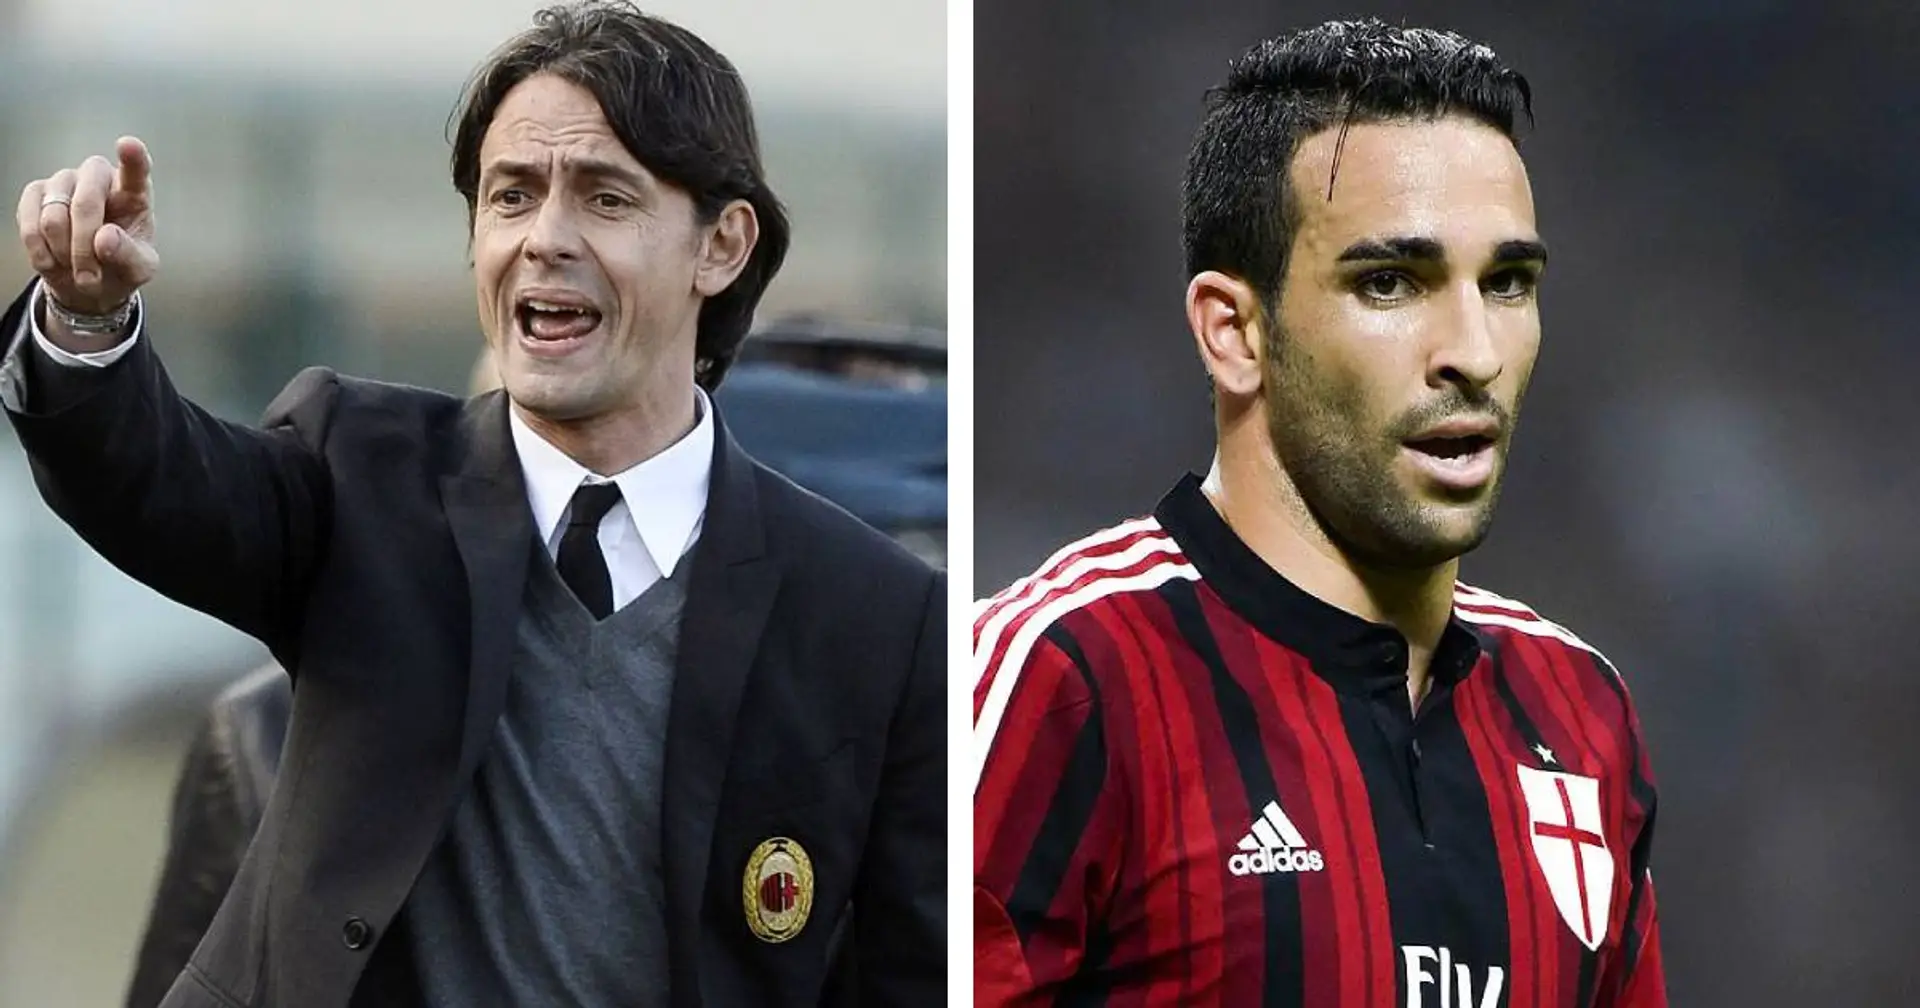 L'ex Milan Rami al veleno: "Inzaghi faceva giocare i suoi amici! Una sfortuna trovarlo"